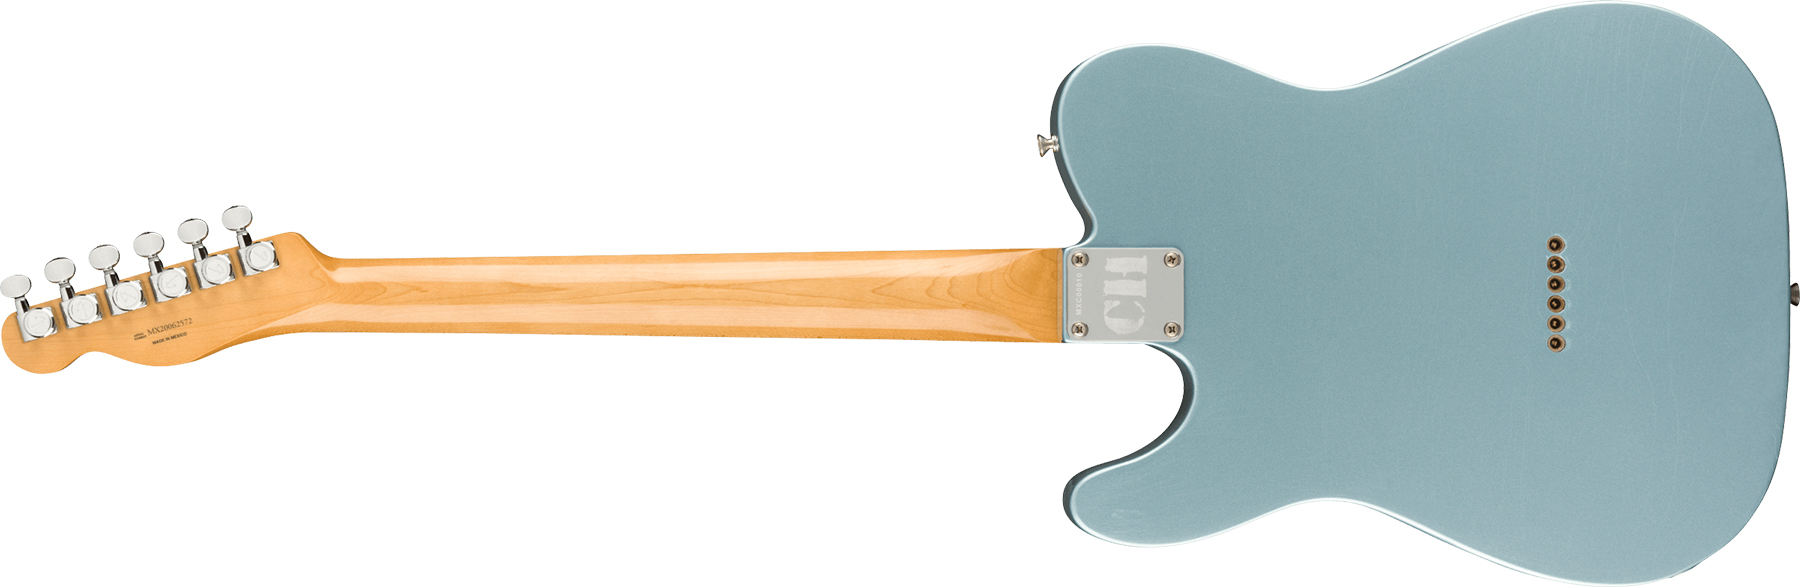 Fender Chrissie Hynde Tele Signature Mex Rw - Road Worn Faded Ice Blue Metallic - Televorm elektrische gitaar - Variation 1